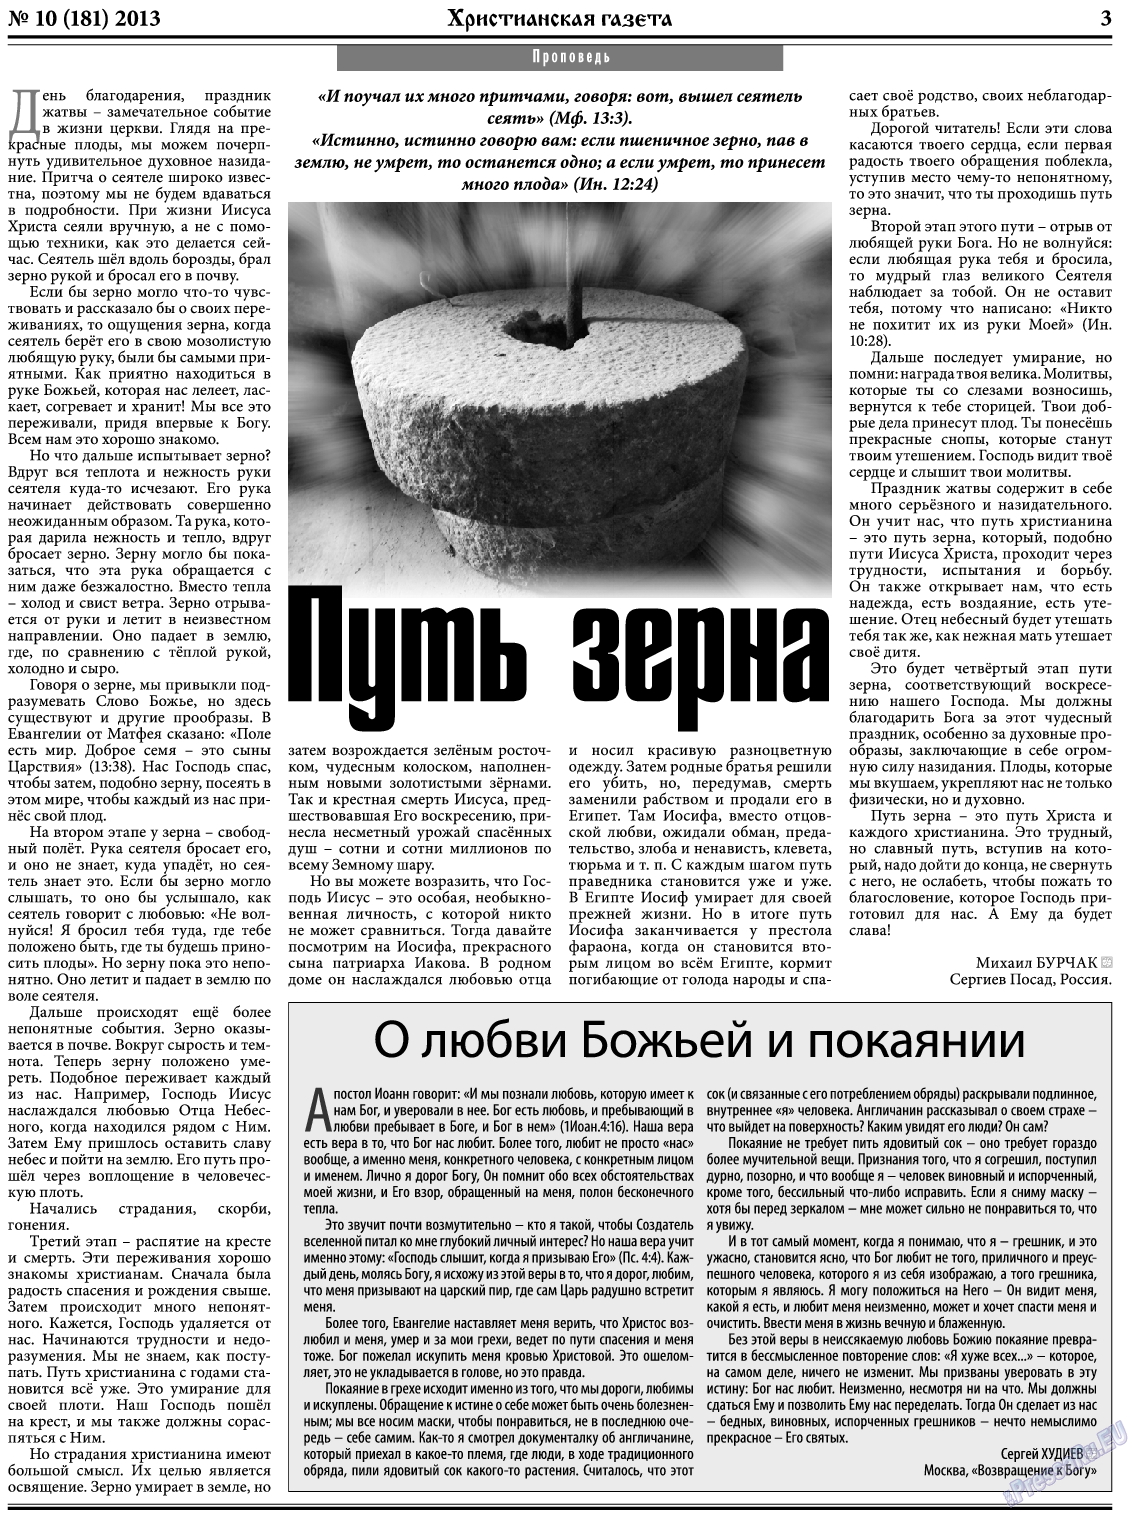 Христианская газета, газета. 2013 №10 стр.3